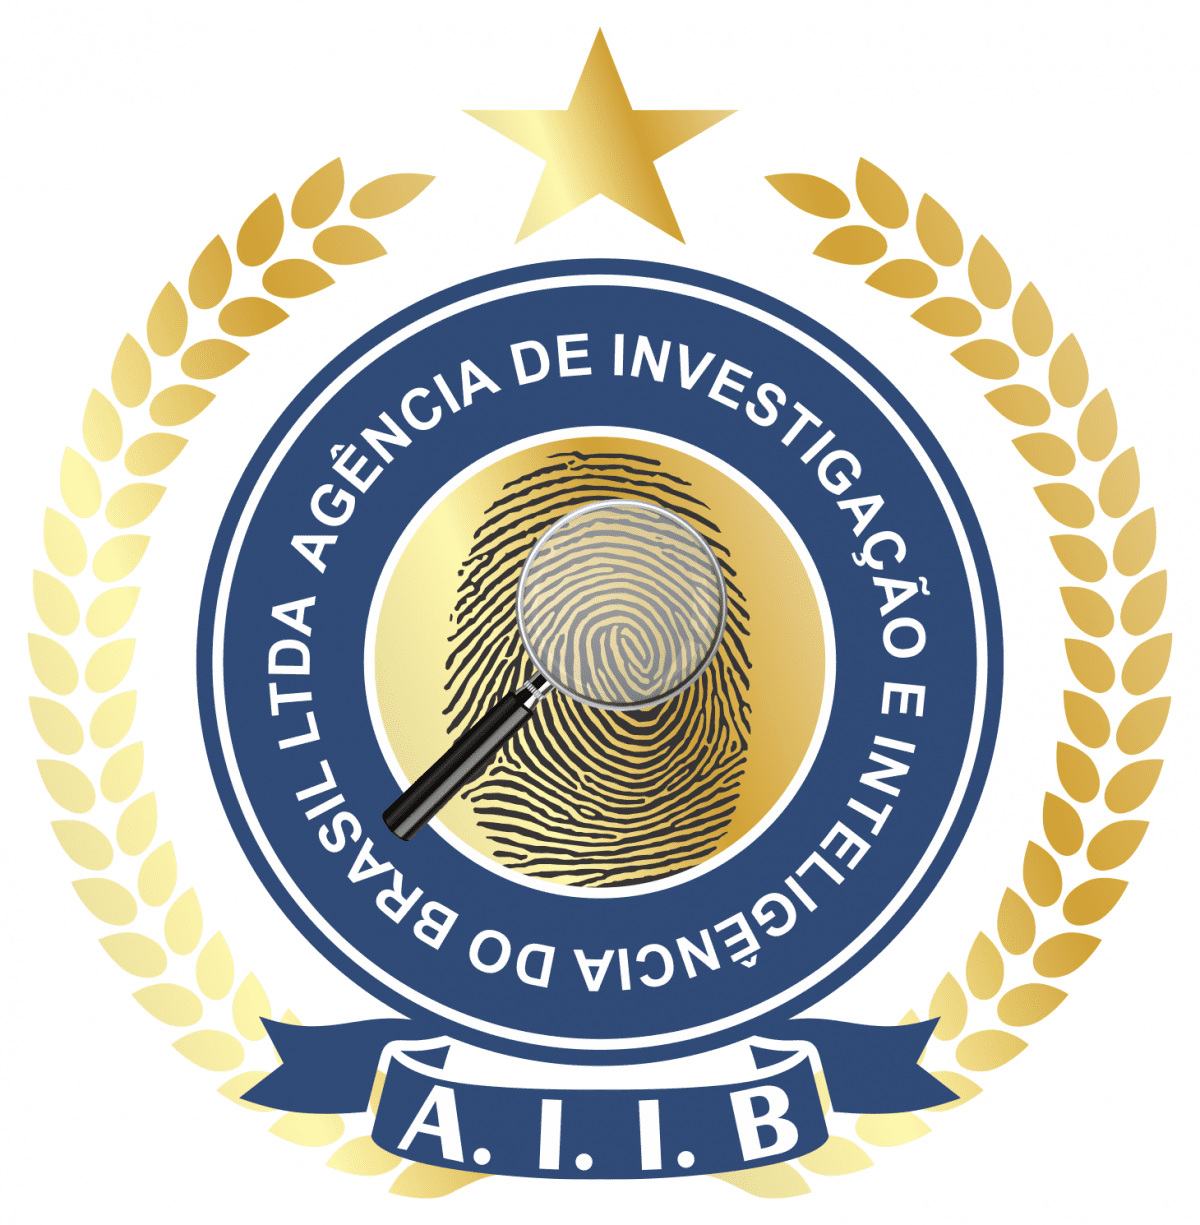 Logomarca AIIB Fundo Branco (1)